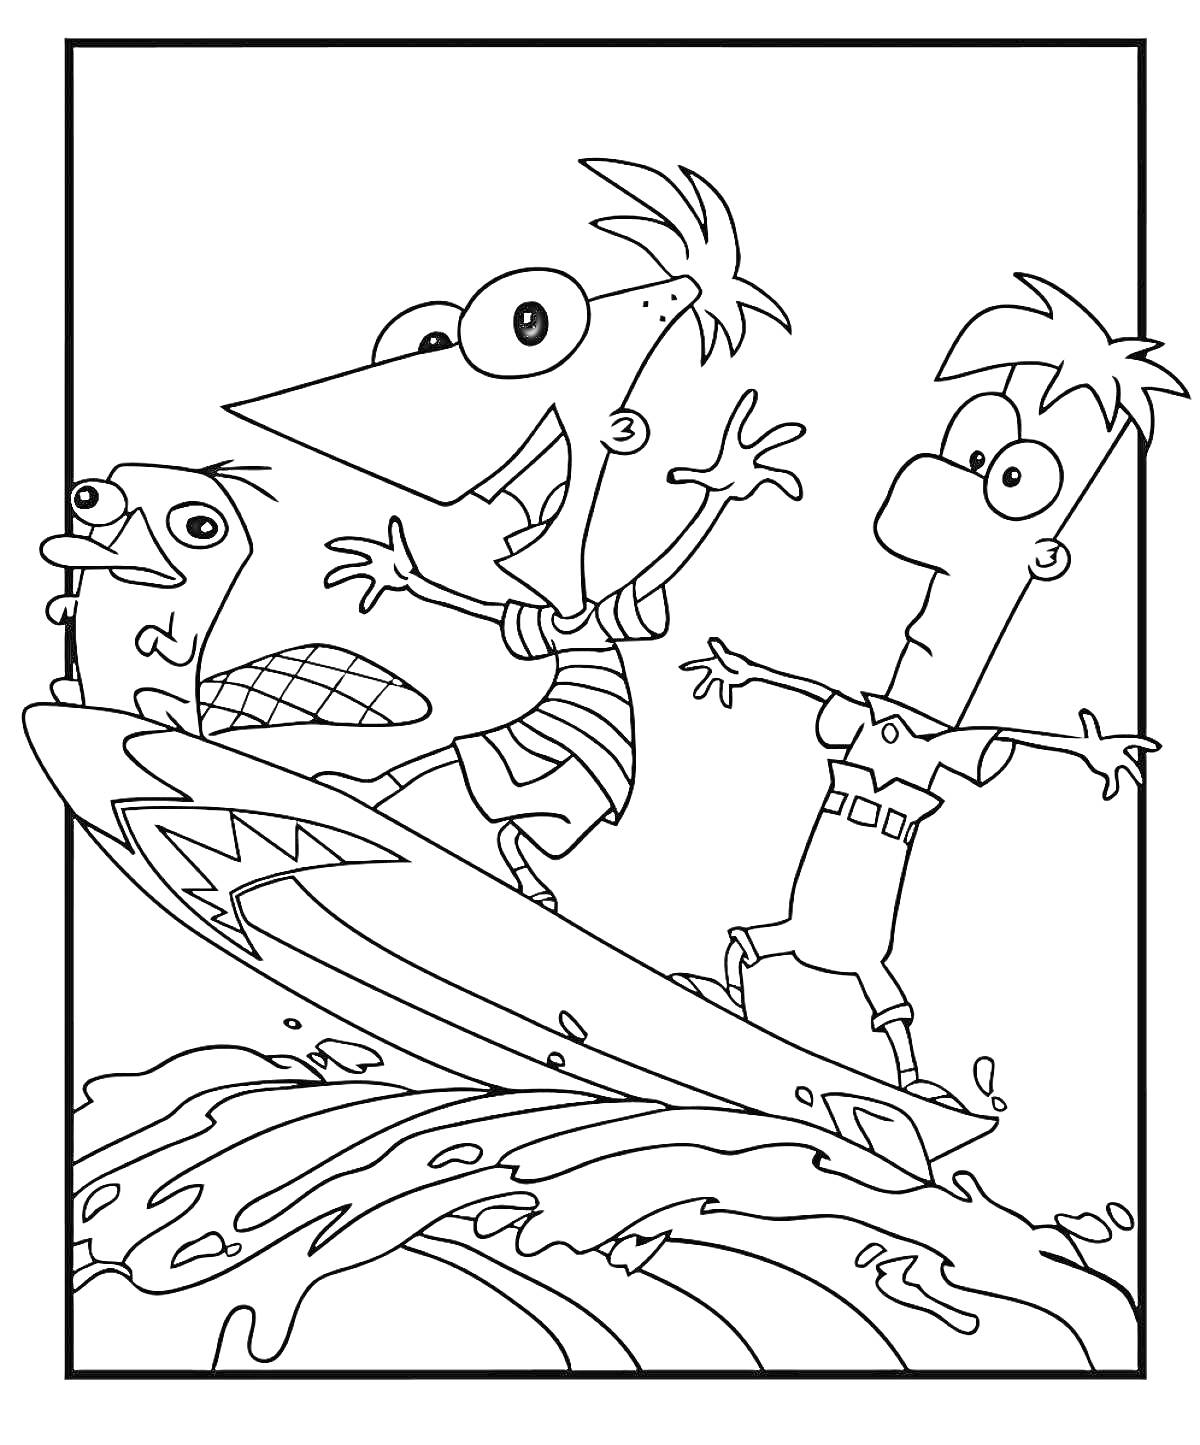 Перри, Финес и Ферб катаются на серфинге